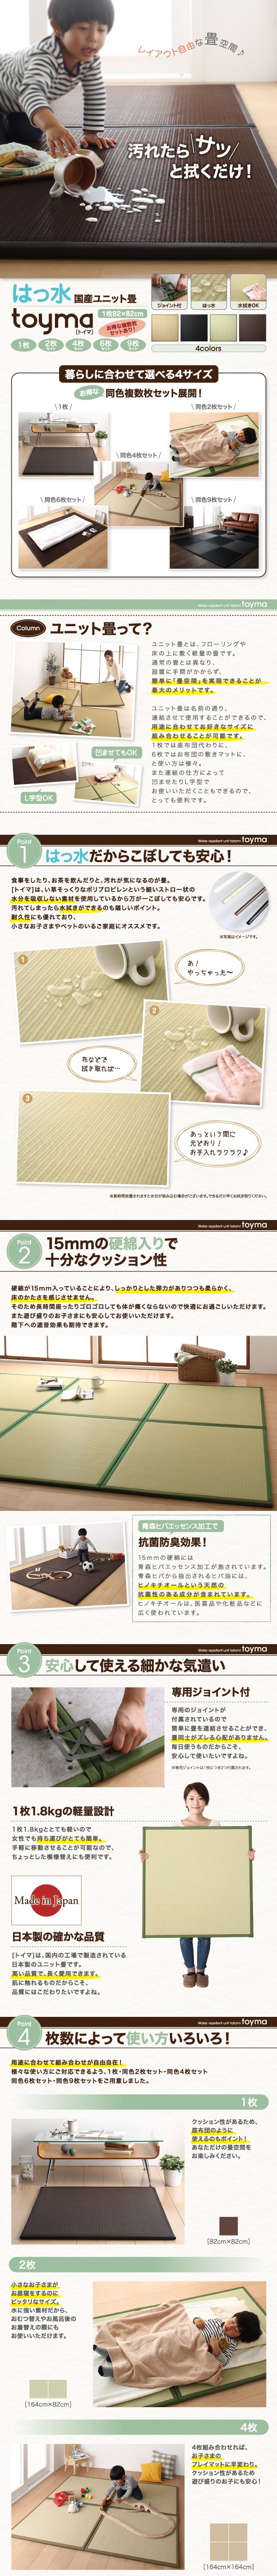 日本製格安■toyma 9枚入り はっ水国産ユニット畳 簡単に「畳空間」を実現 い草そっくりなポリプロピレン 枚数によって使い方いろいろ! ラグ一般